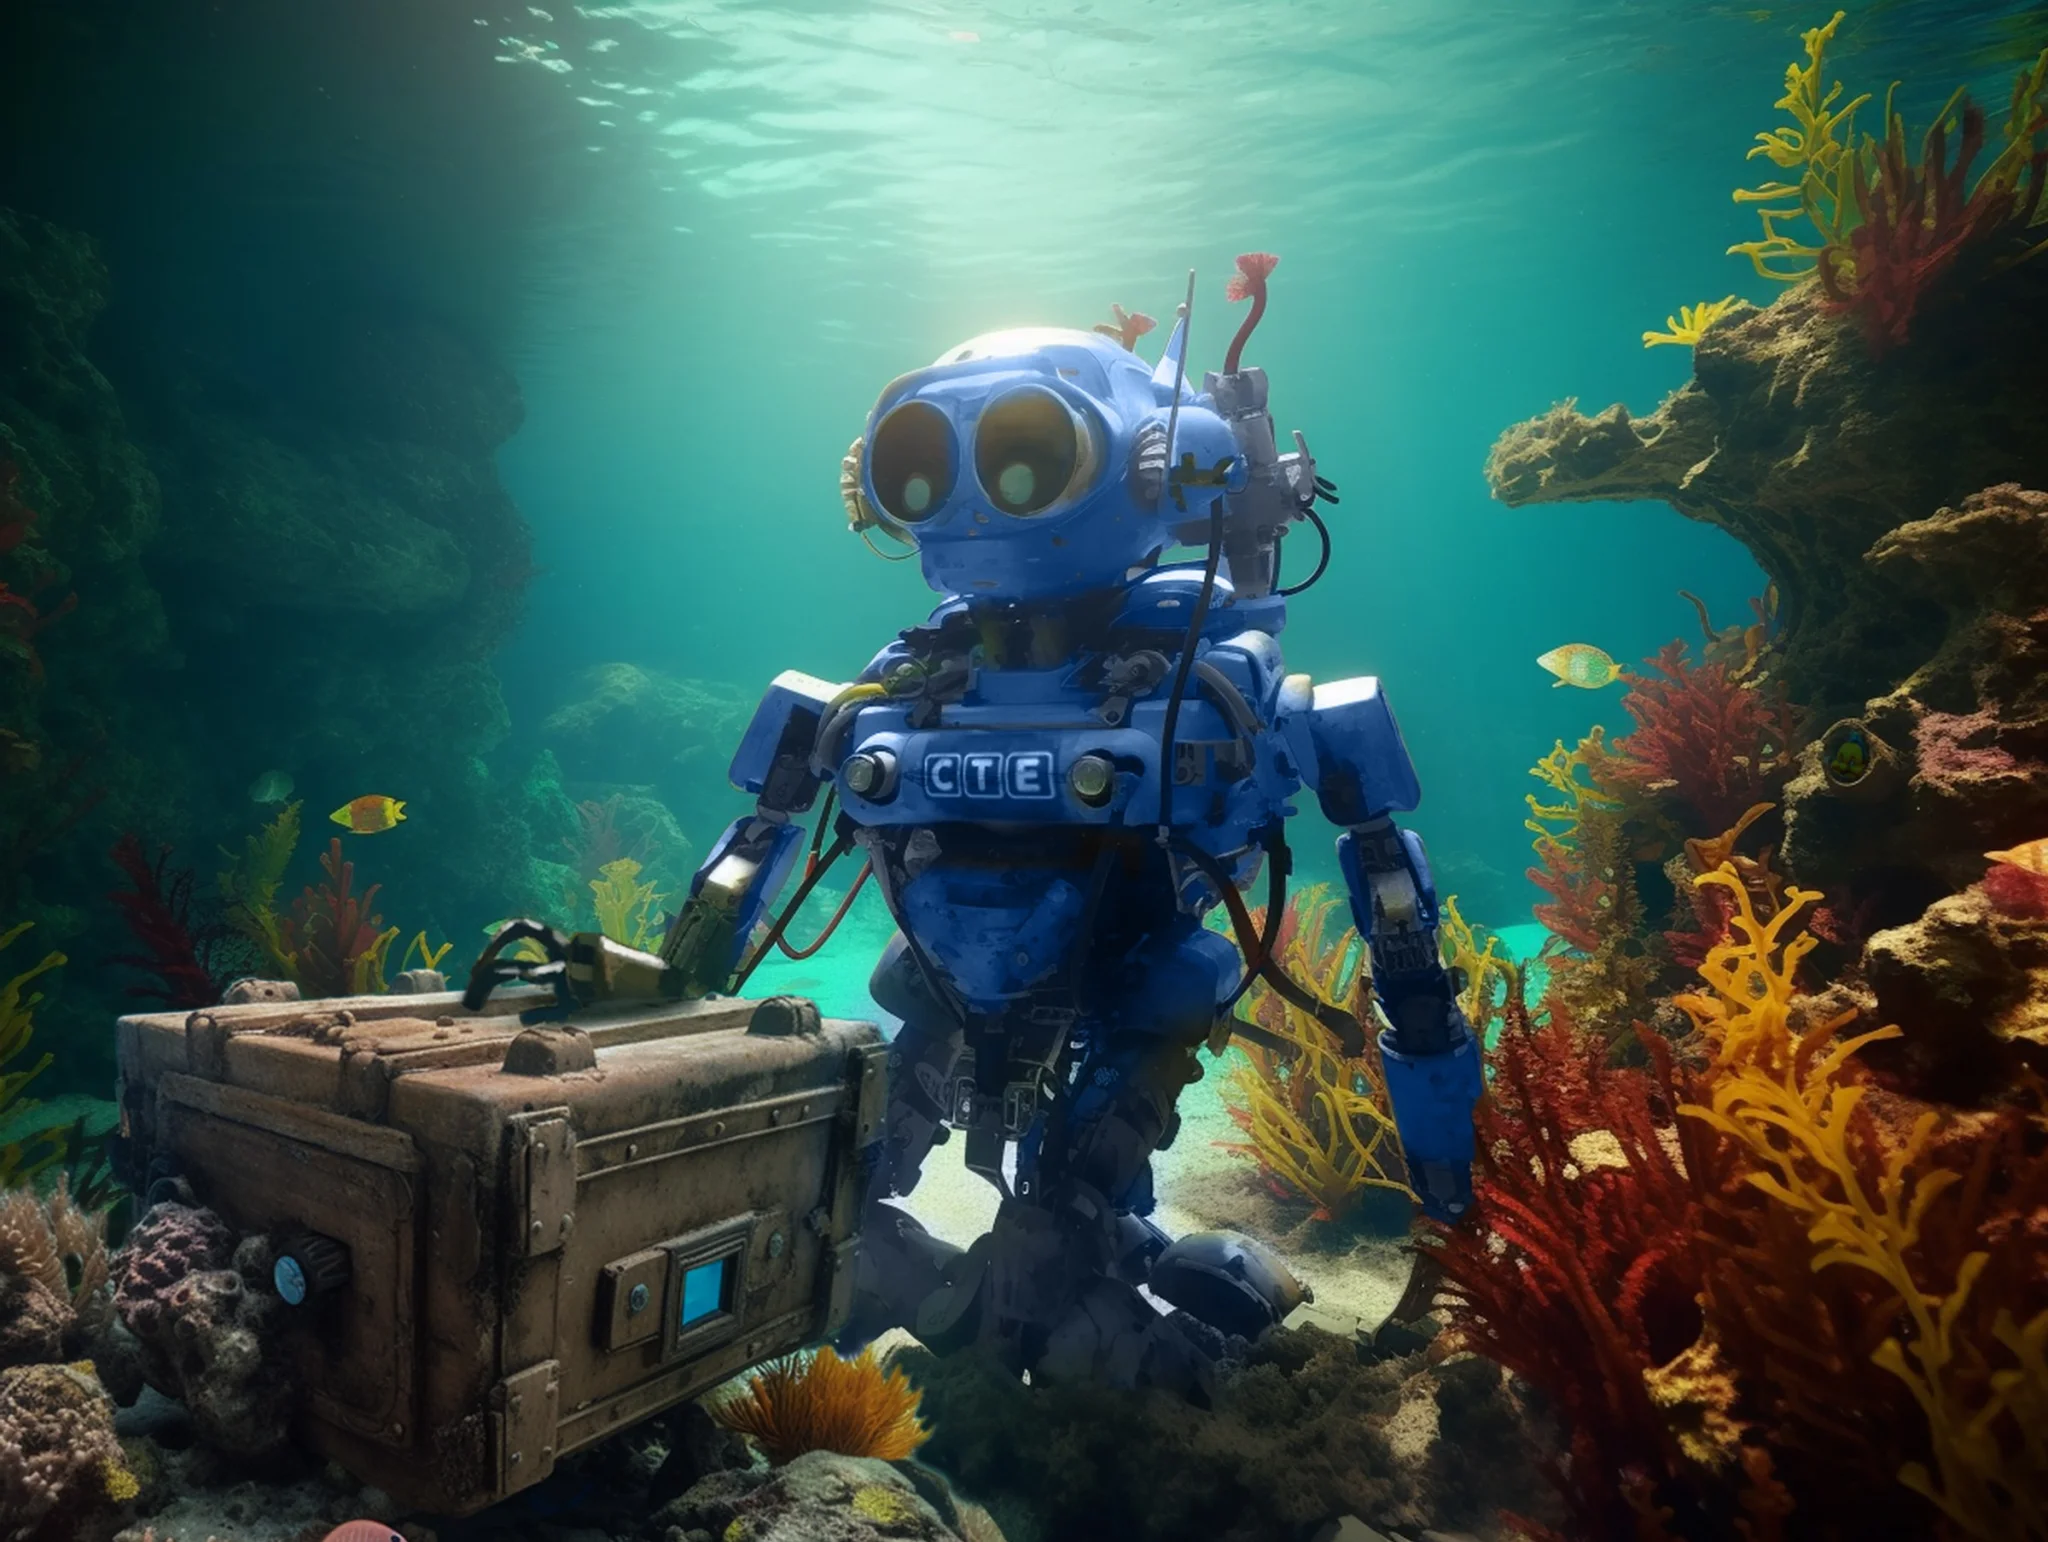 Roboter unter Wasser als Sinnbild für die suche nach dem Schatz auf dem Meeresgrund. Bild generiert mit künstlicher Intelligenz (Midjourney).